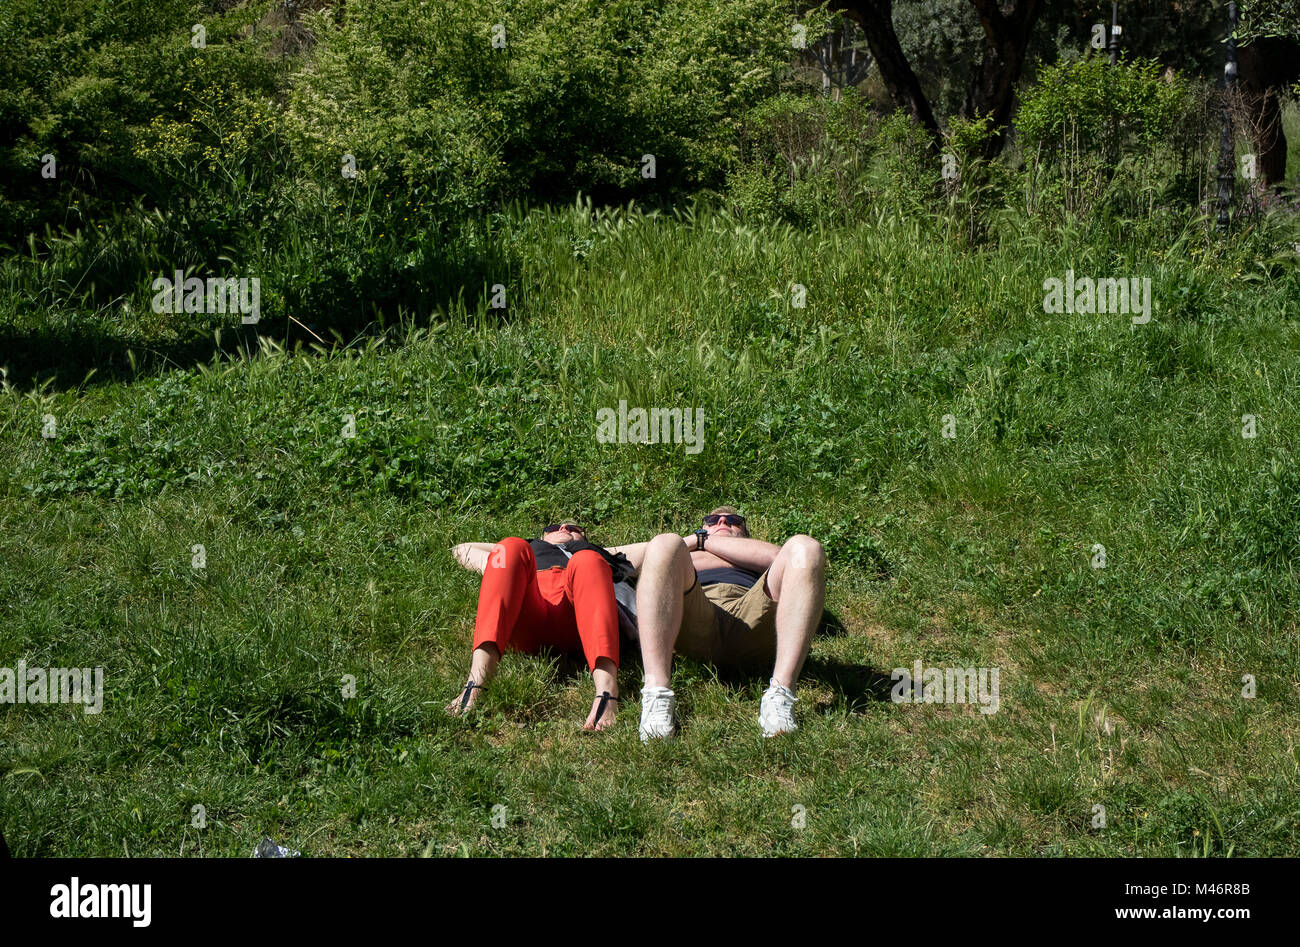 Roma, Italia: Una pareja joven descansa sobre la hierba bajo el sol Foto de stock